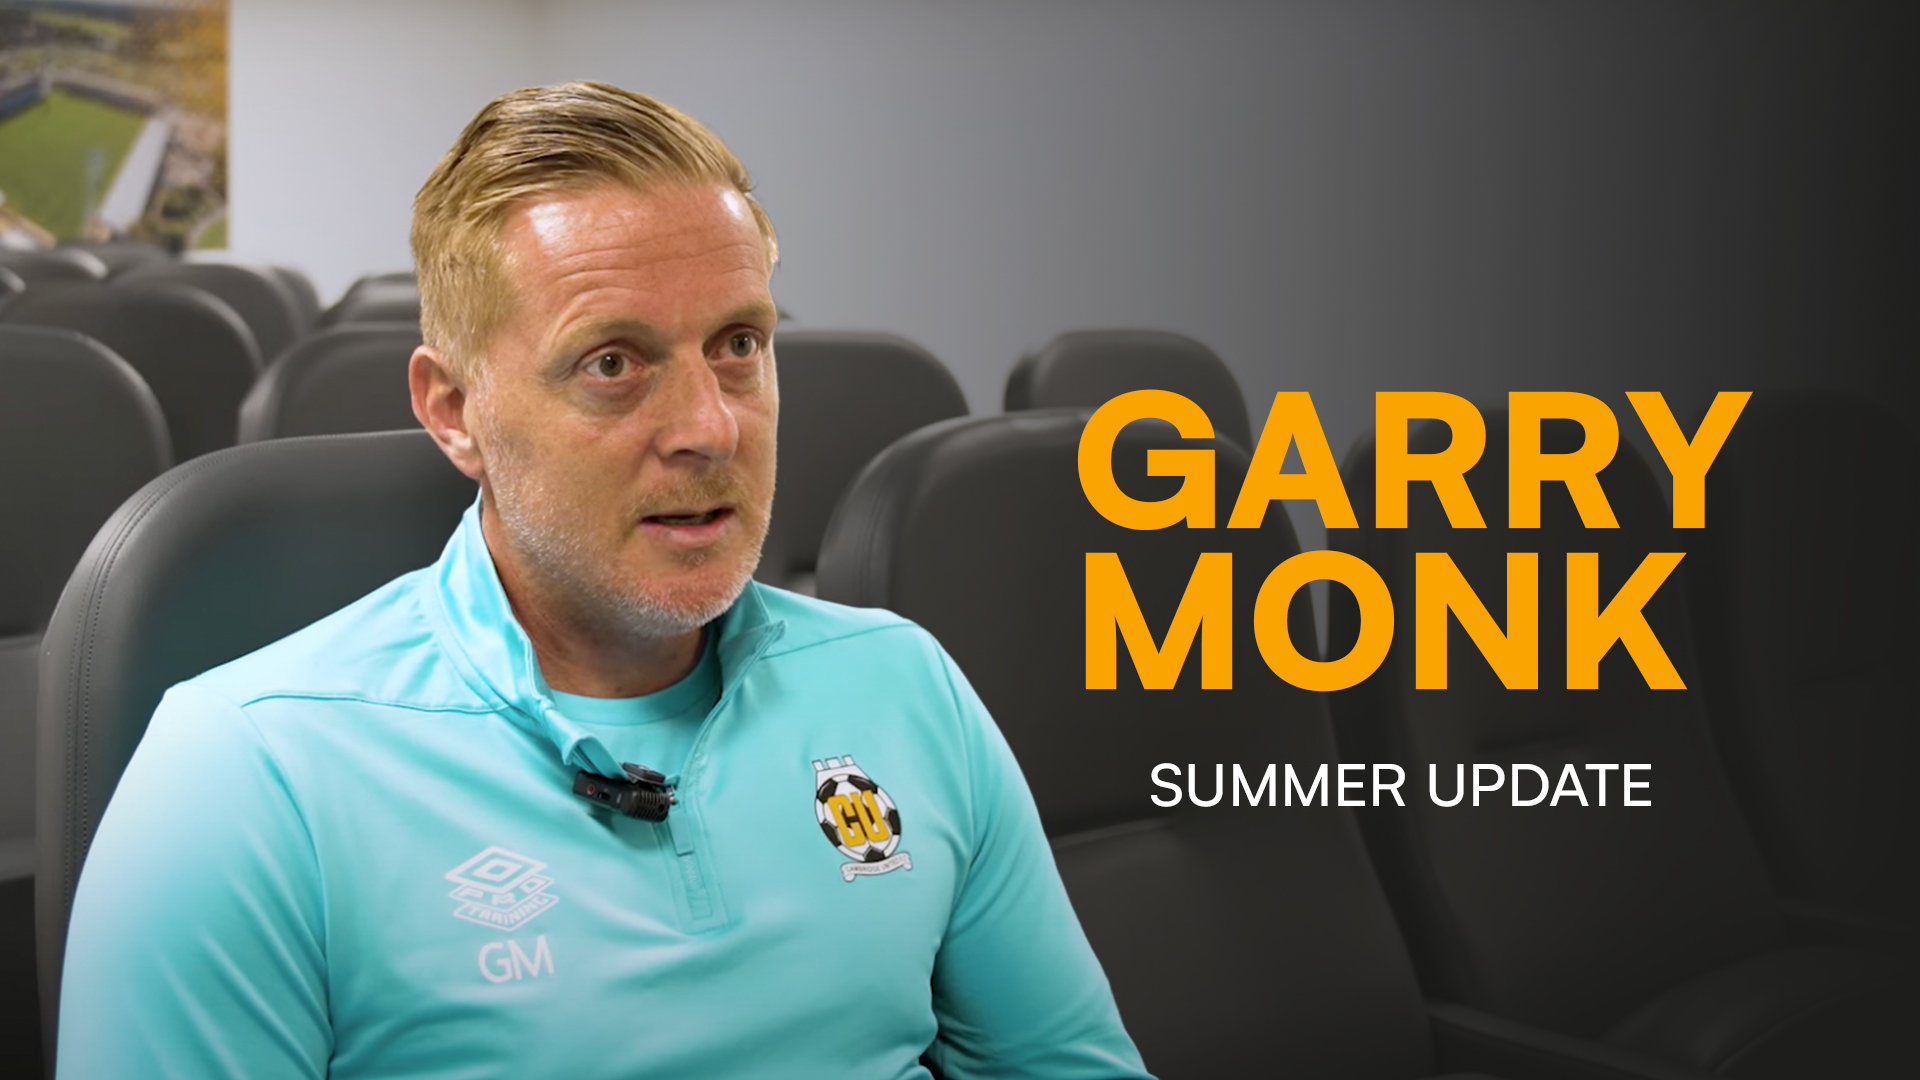 Garry Monk summer update thumbnail